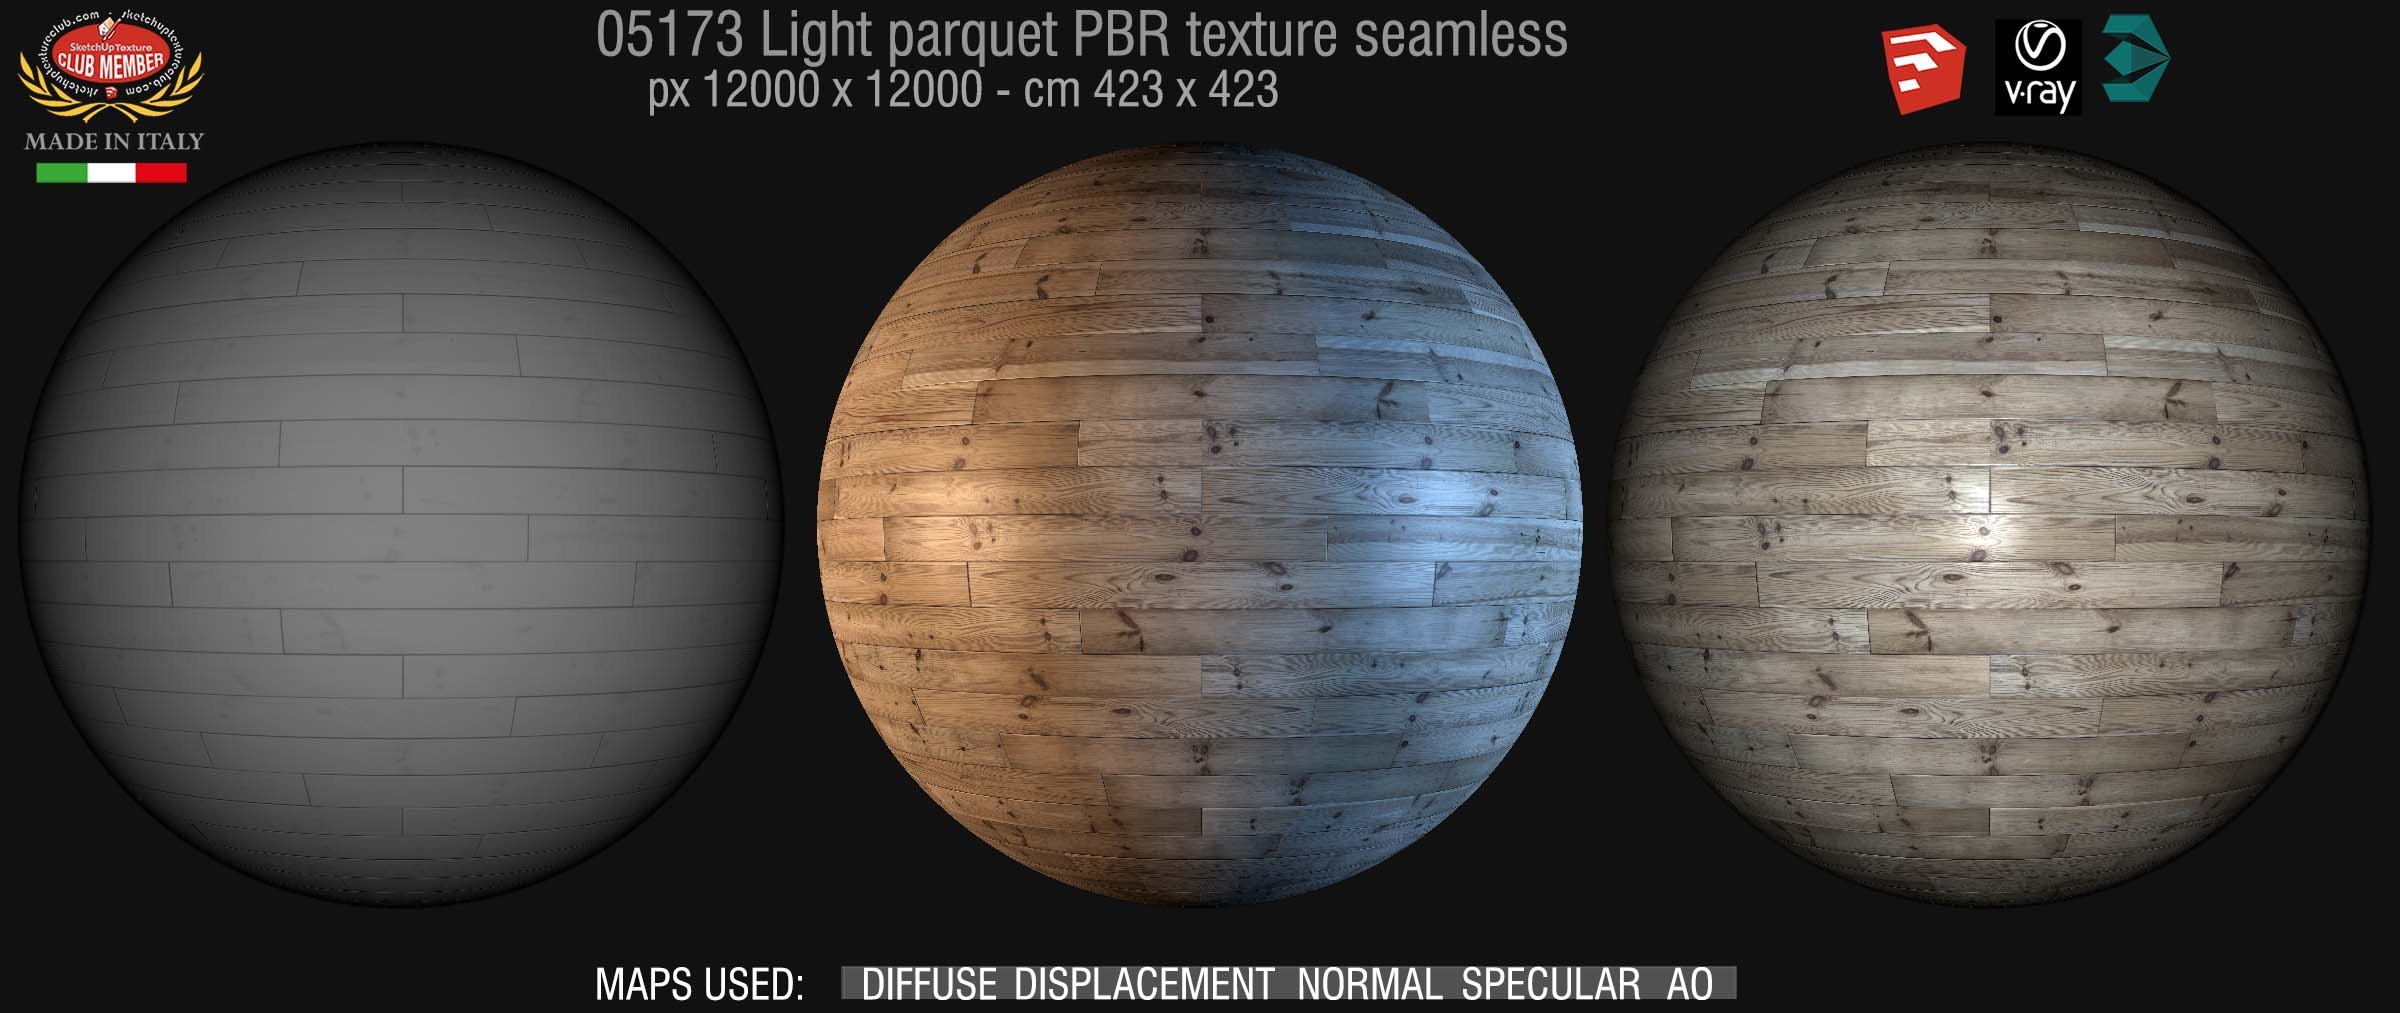 05173 light parquet PBR texture seamless DEMO